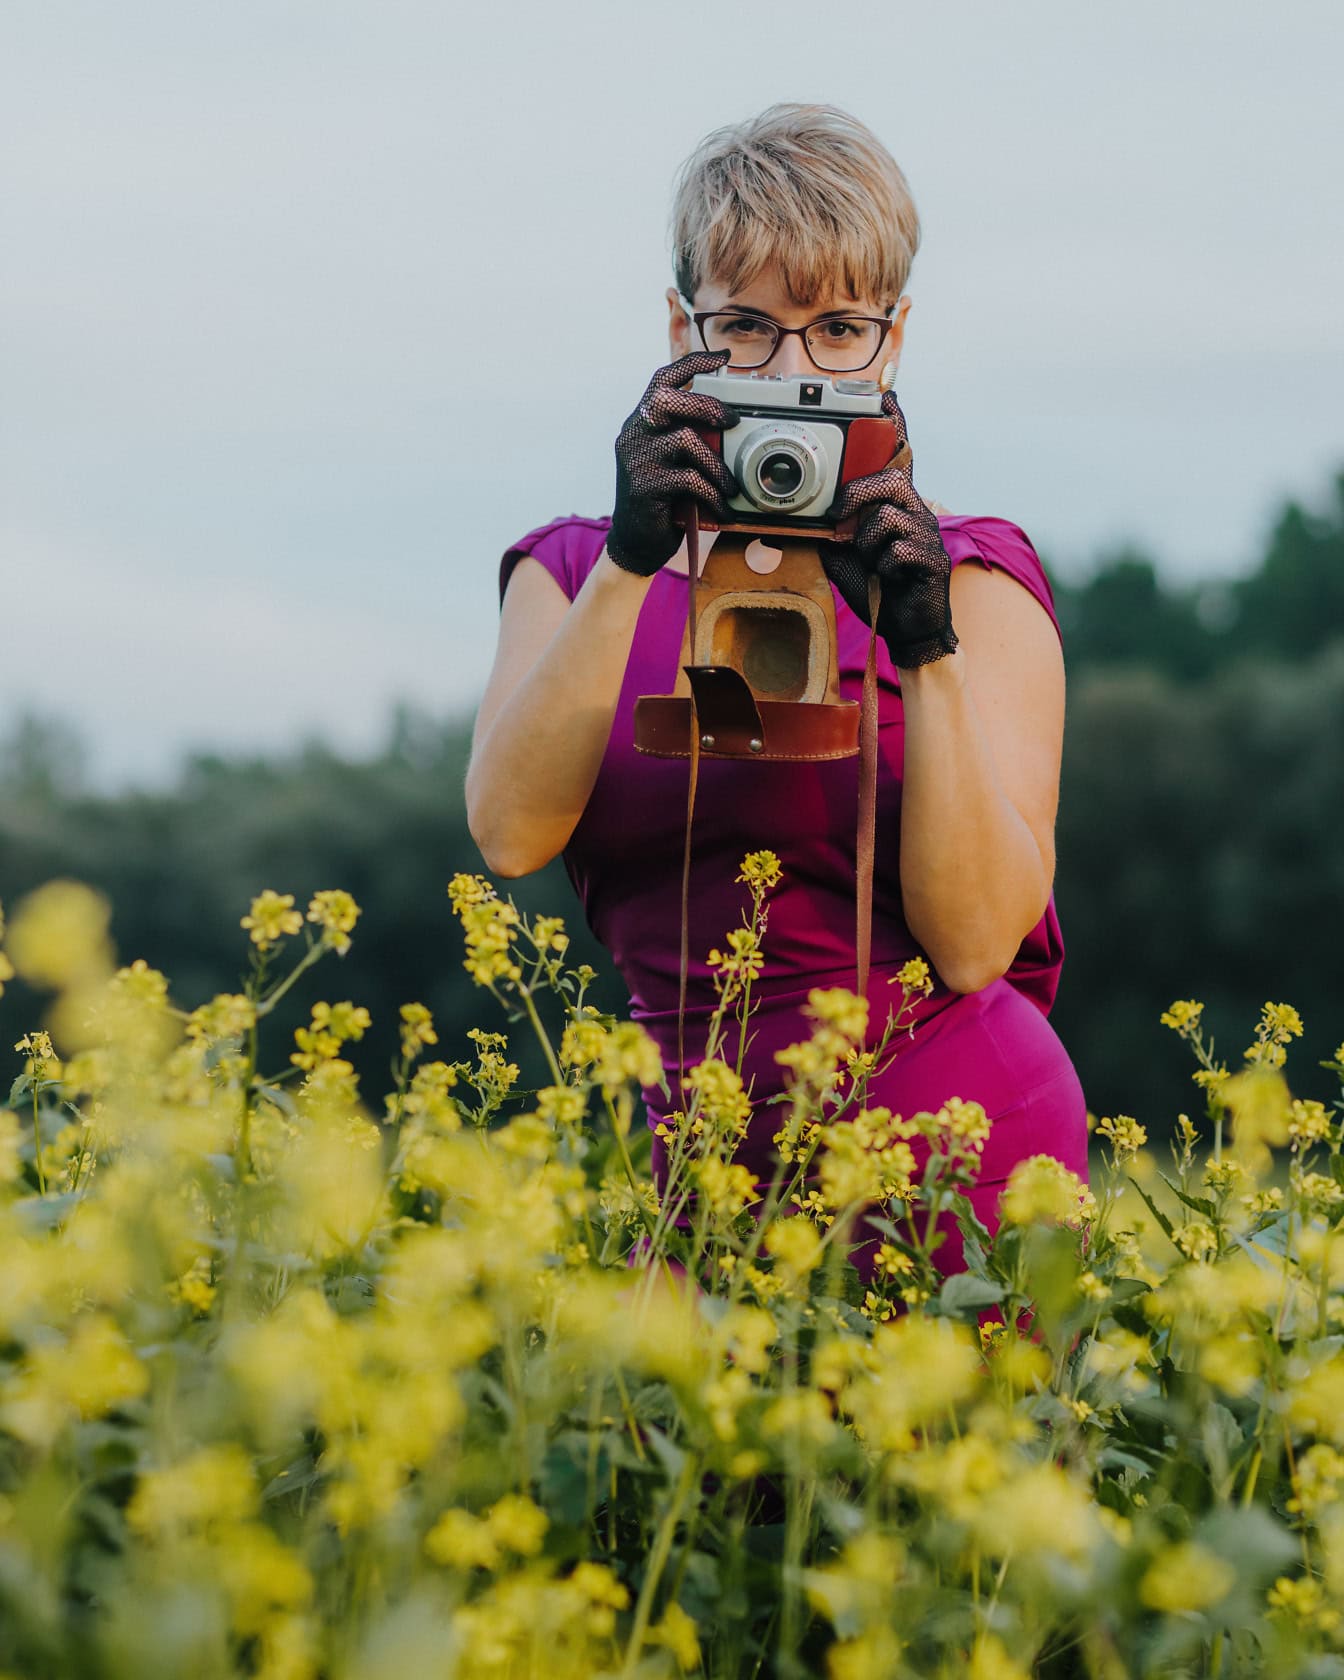 Mor elbise ve dantel eldiven giyen kadın, sarı çiçeklerle dolu bir tarlada analog eski kamera tutuyor